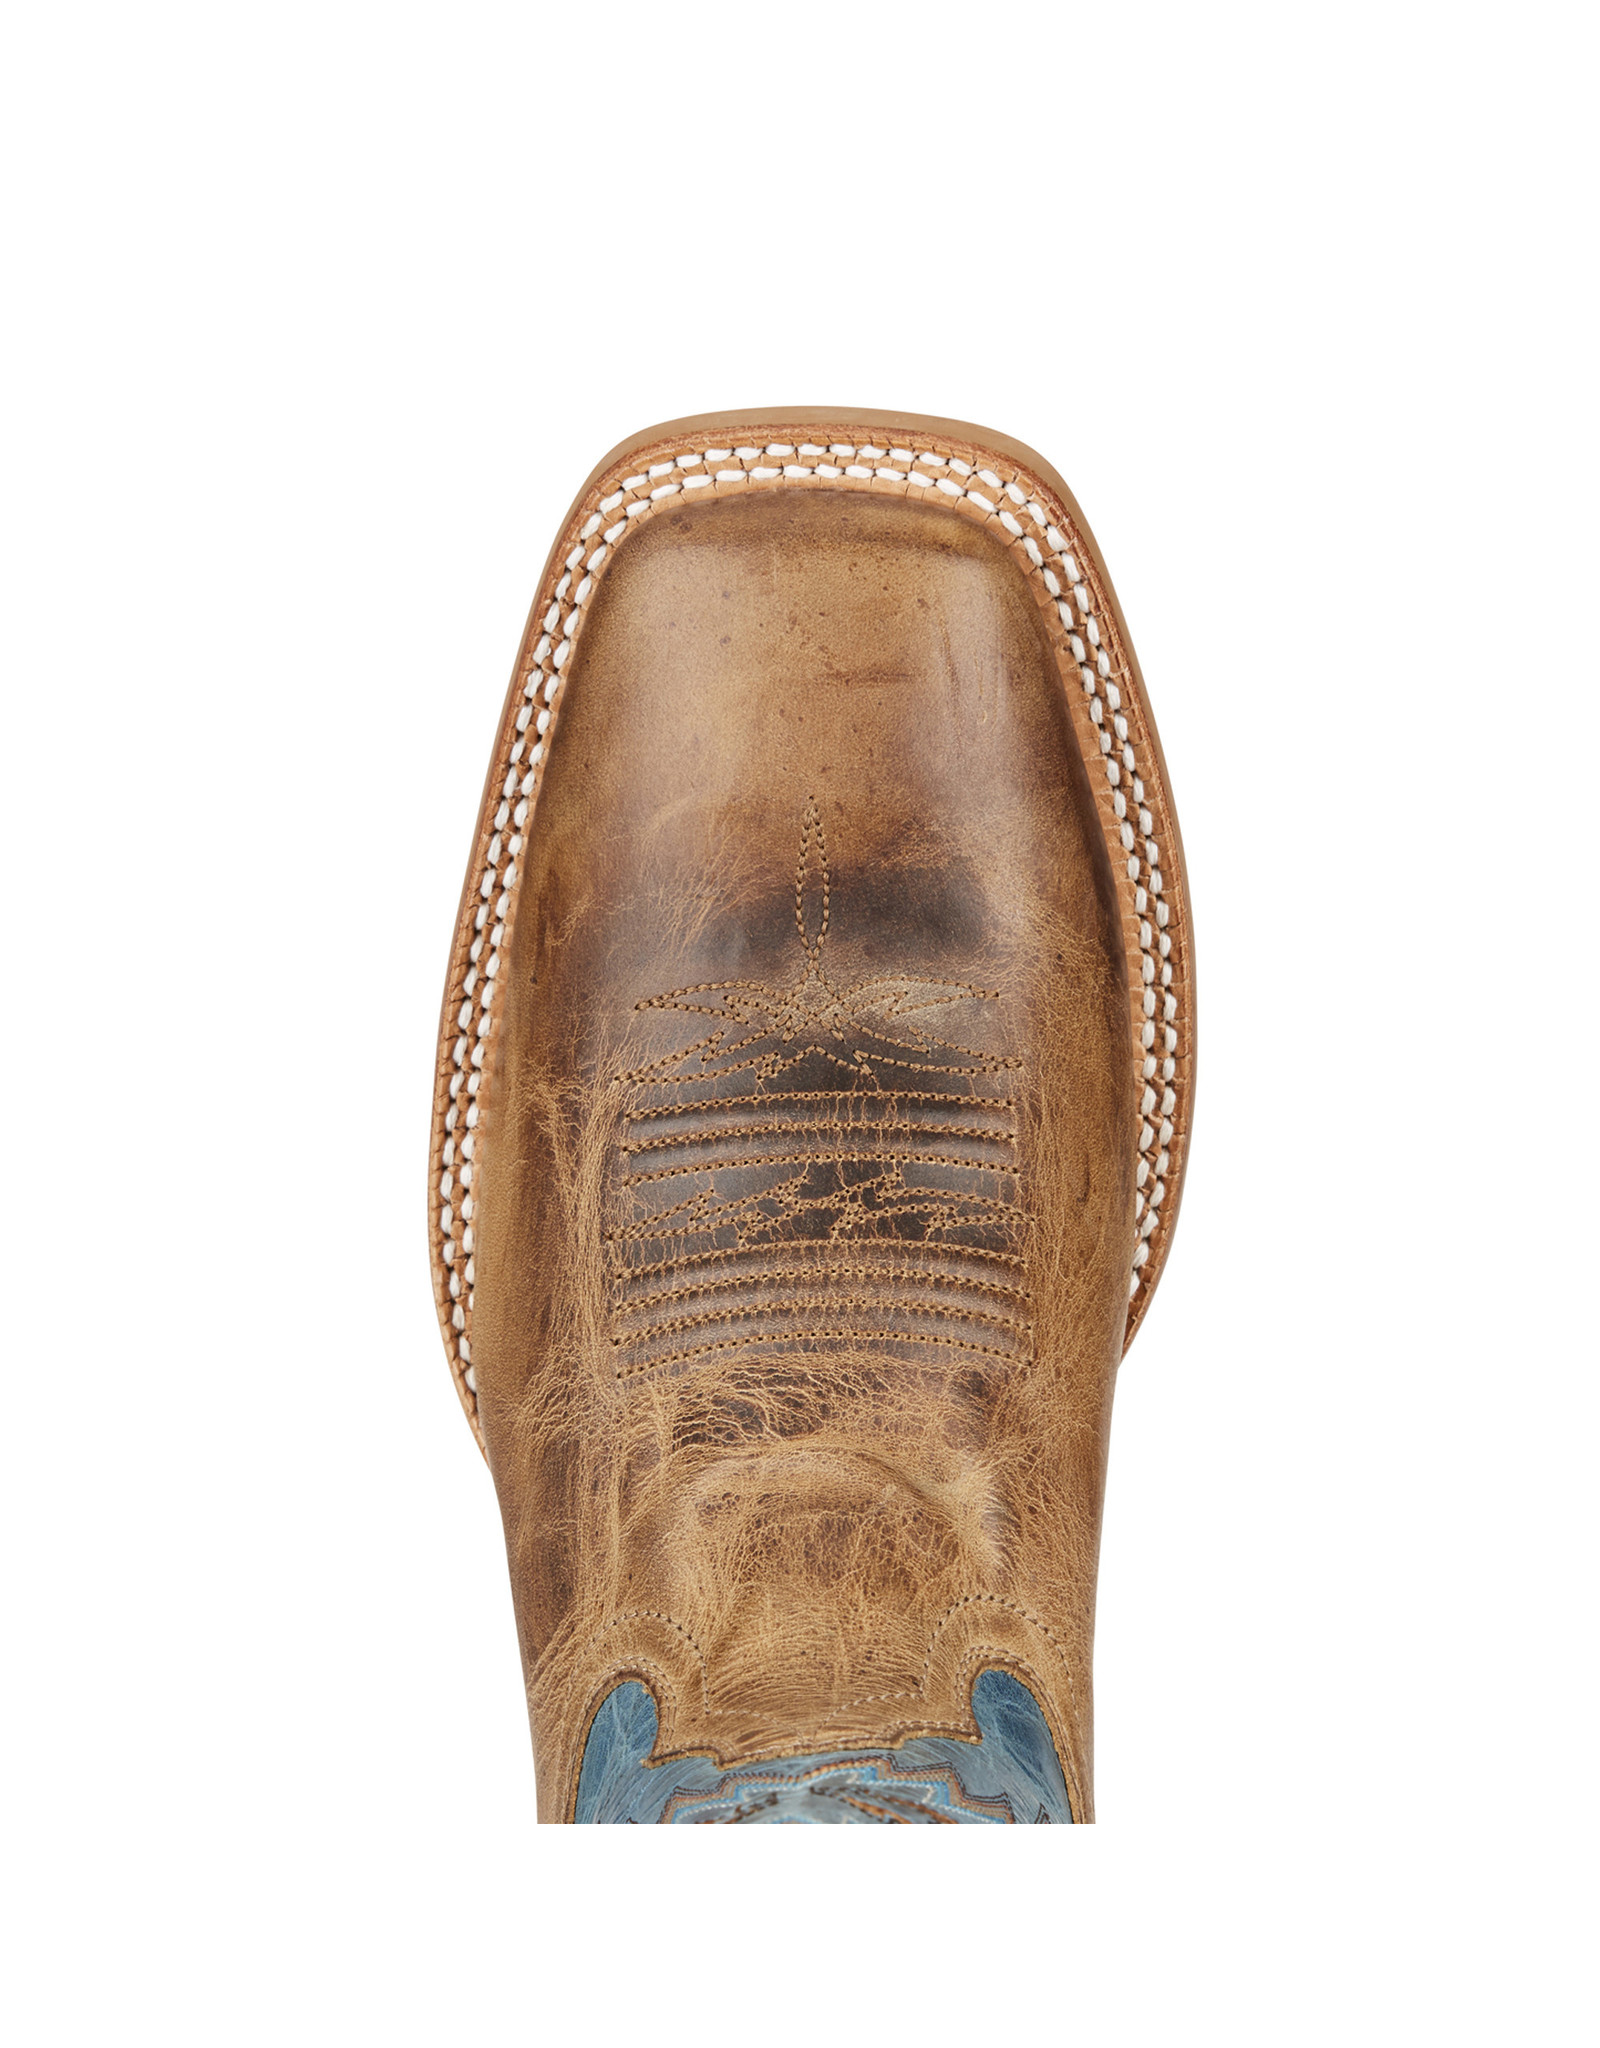 Ariat Men's Tan/Blue Arena Rebound 10021679 Western Boots